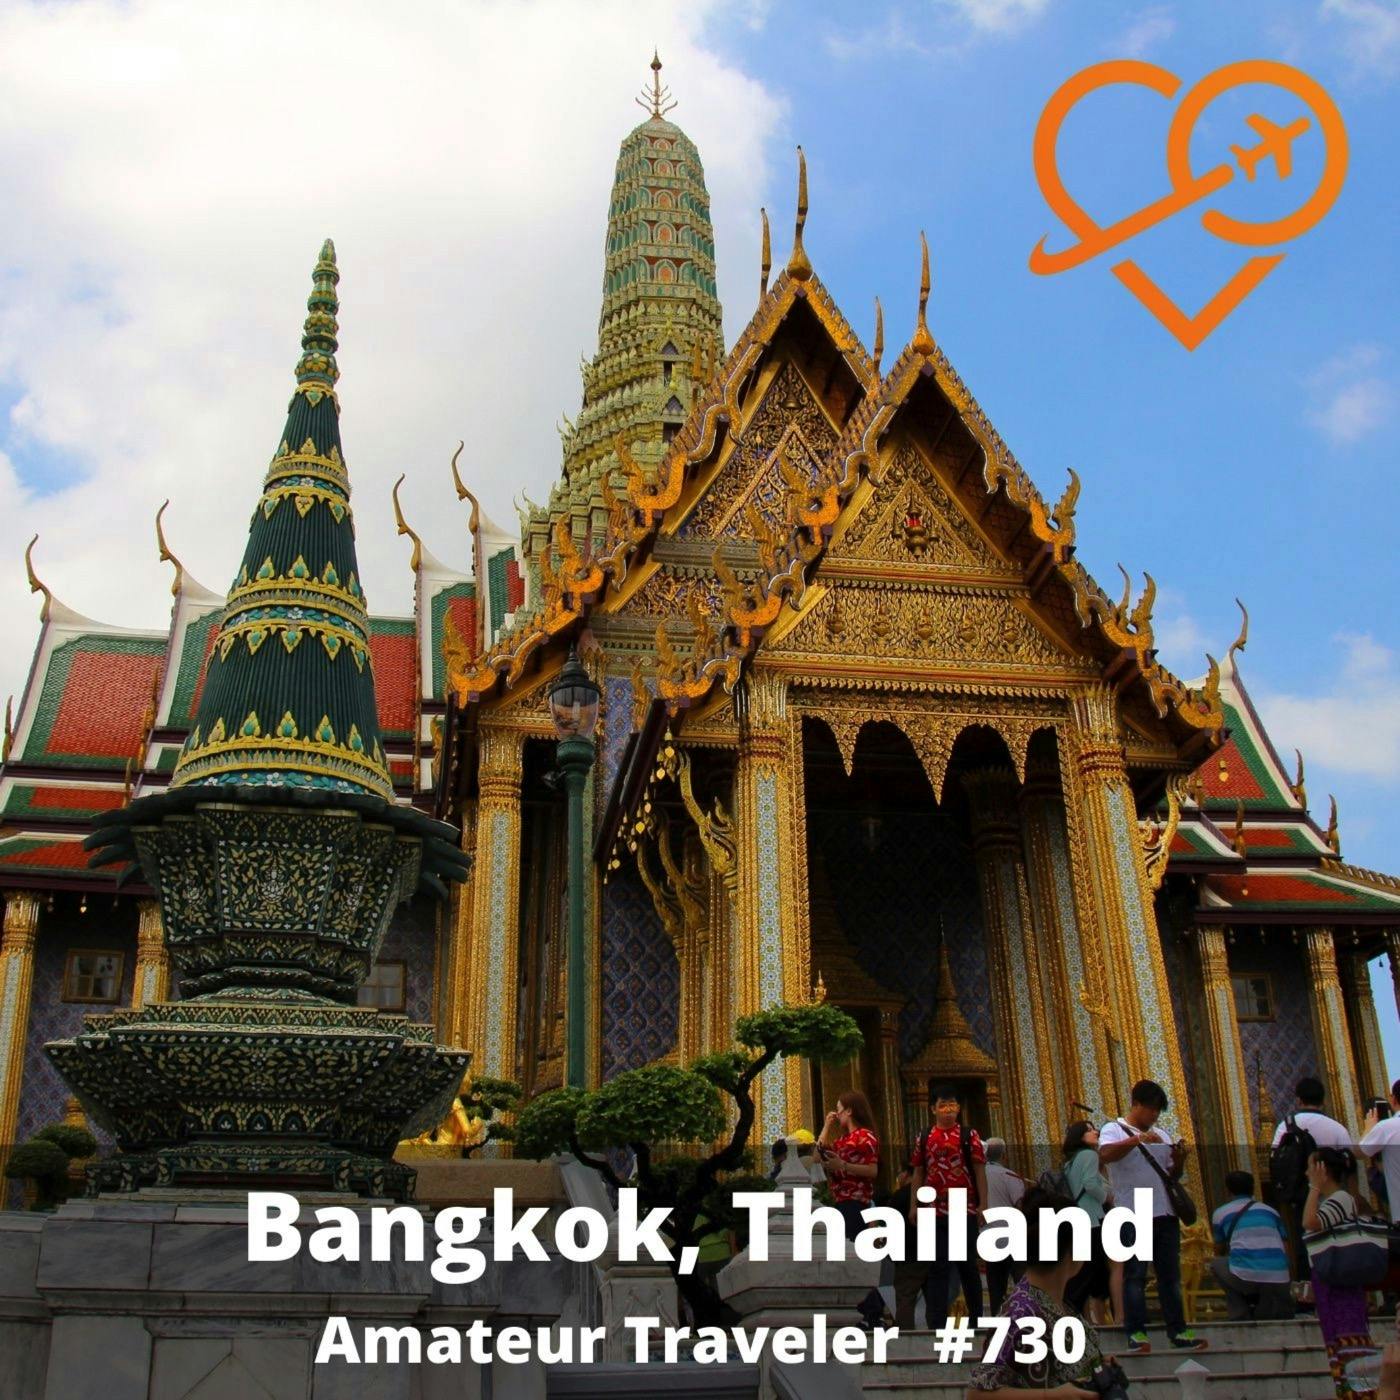 AT#730 - Travel to Bangkok, Thailand